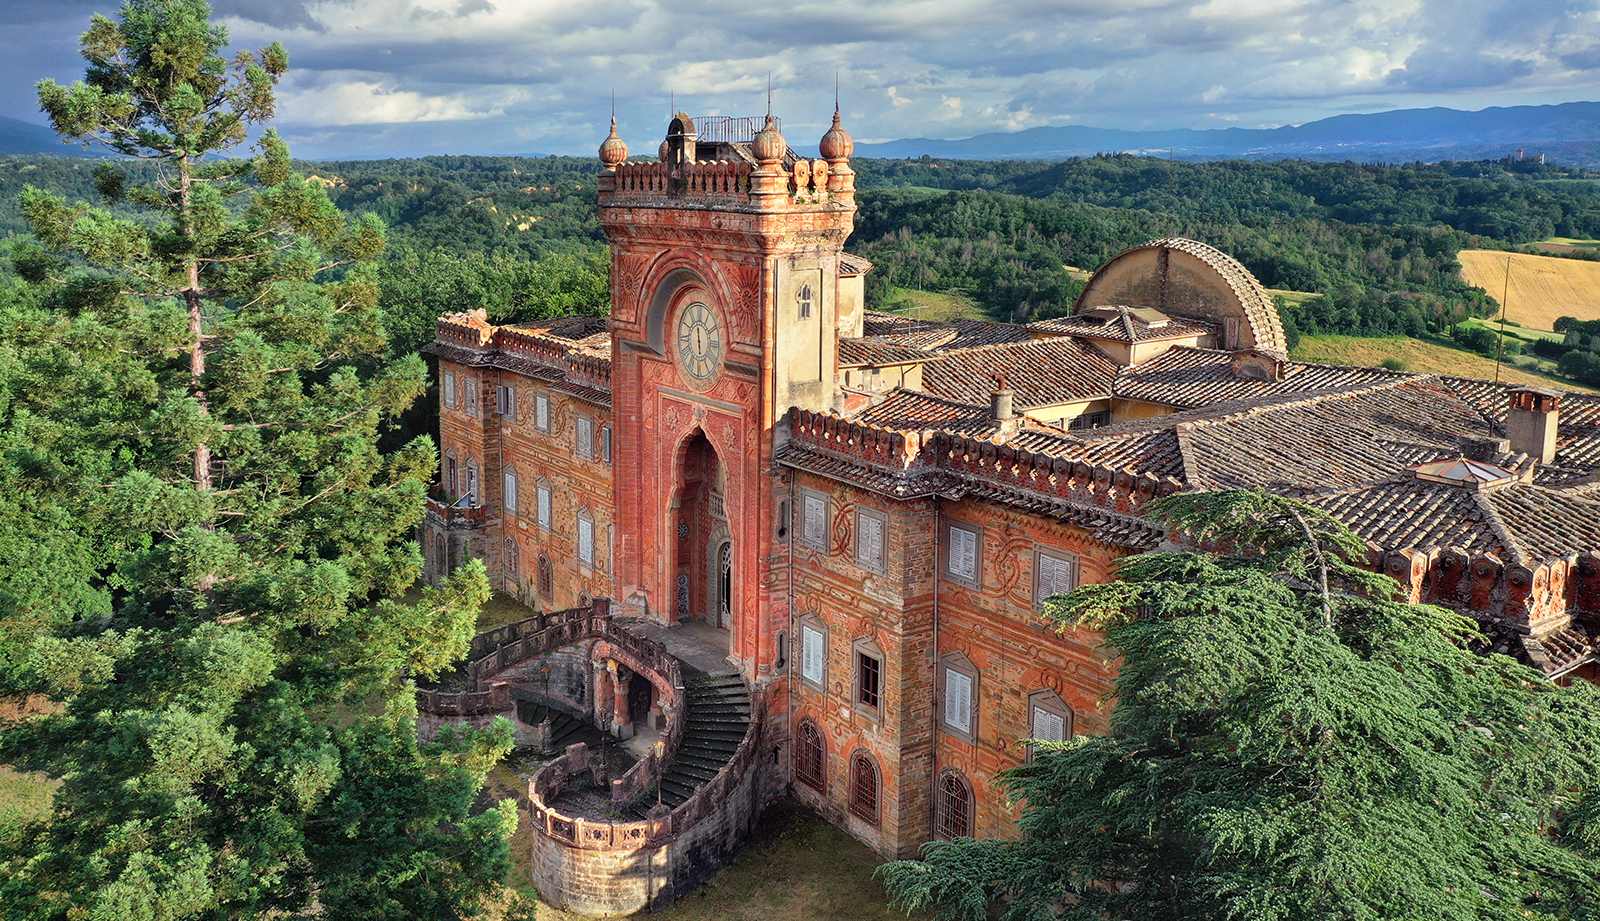 Burgen, Villen und Landhäuser in Italien